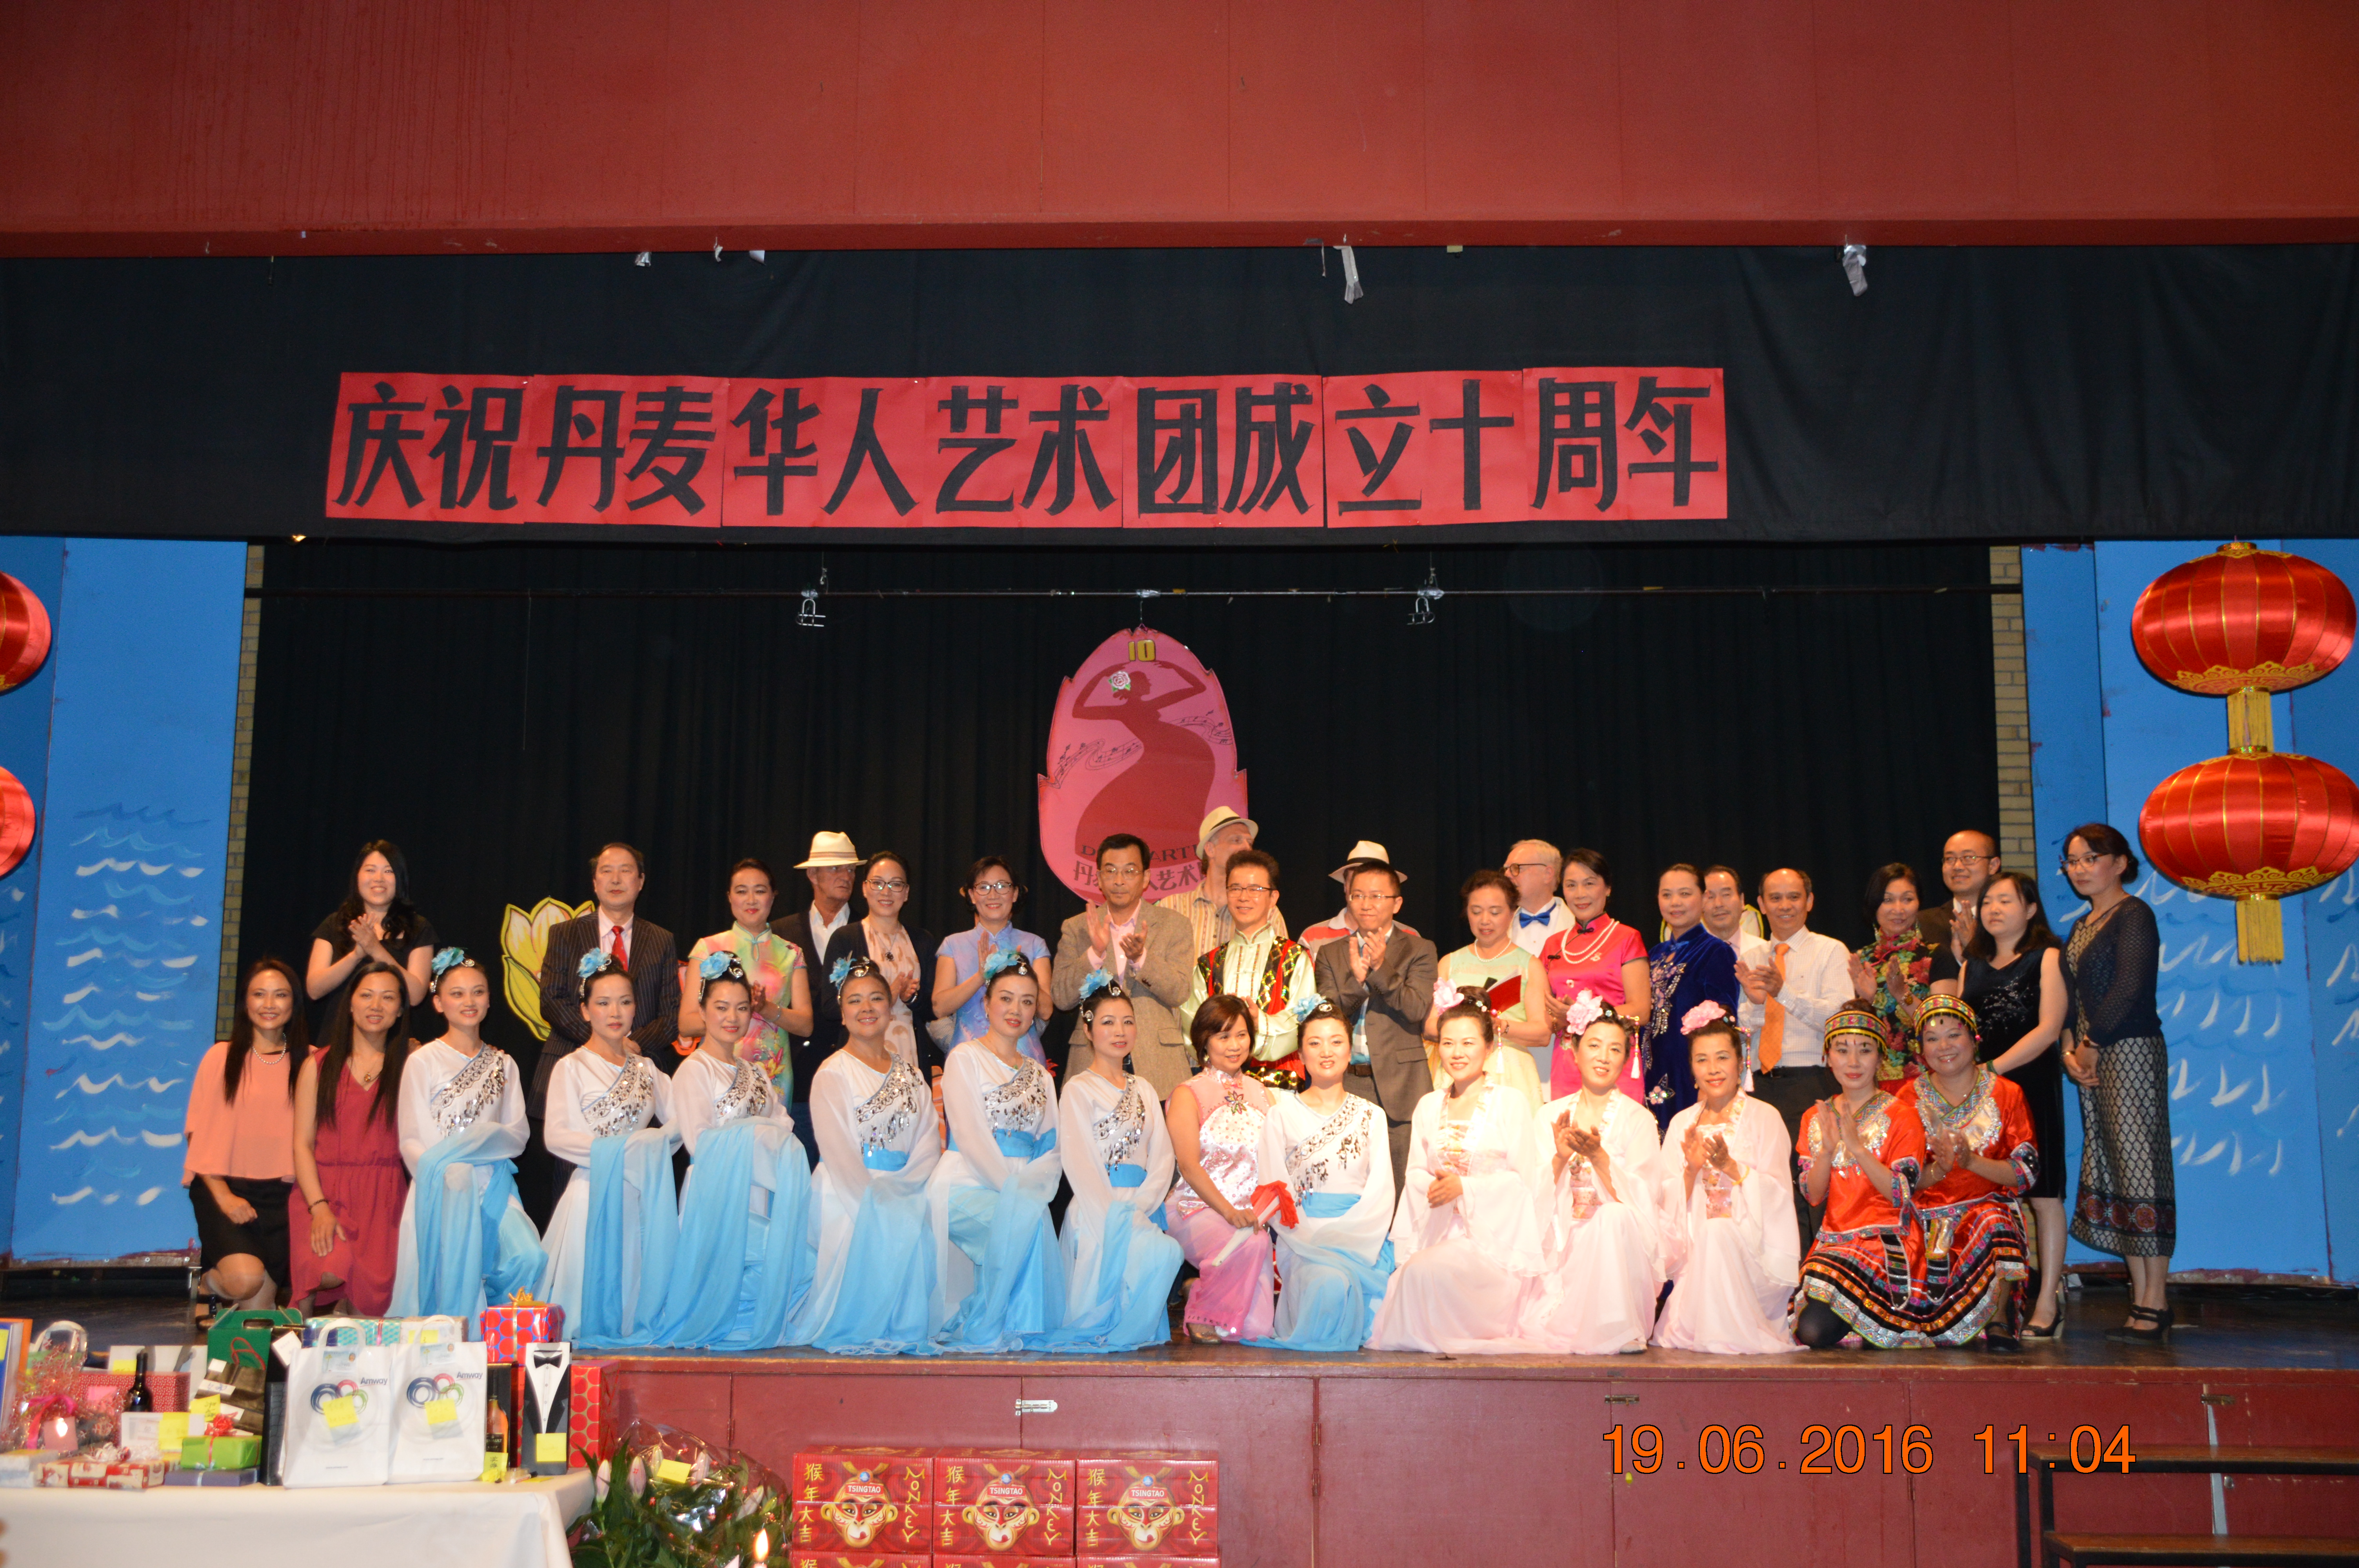 热烈祝贺丹麦华人艺术团成立10周年庆祝活动圆满成功